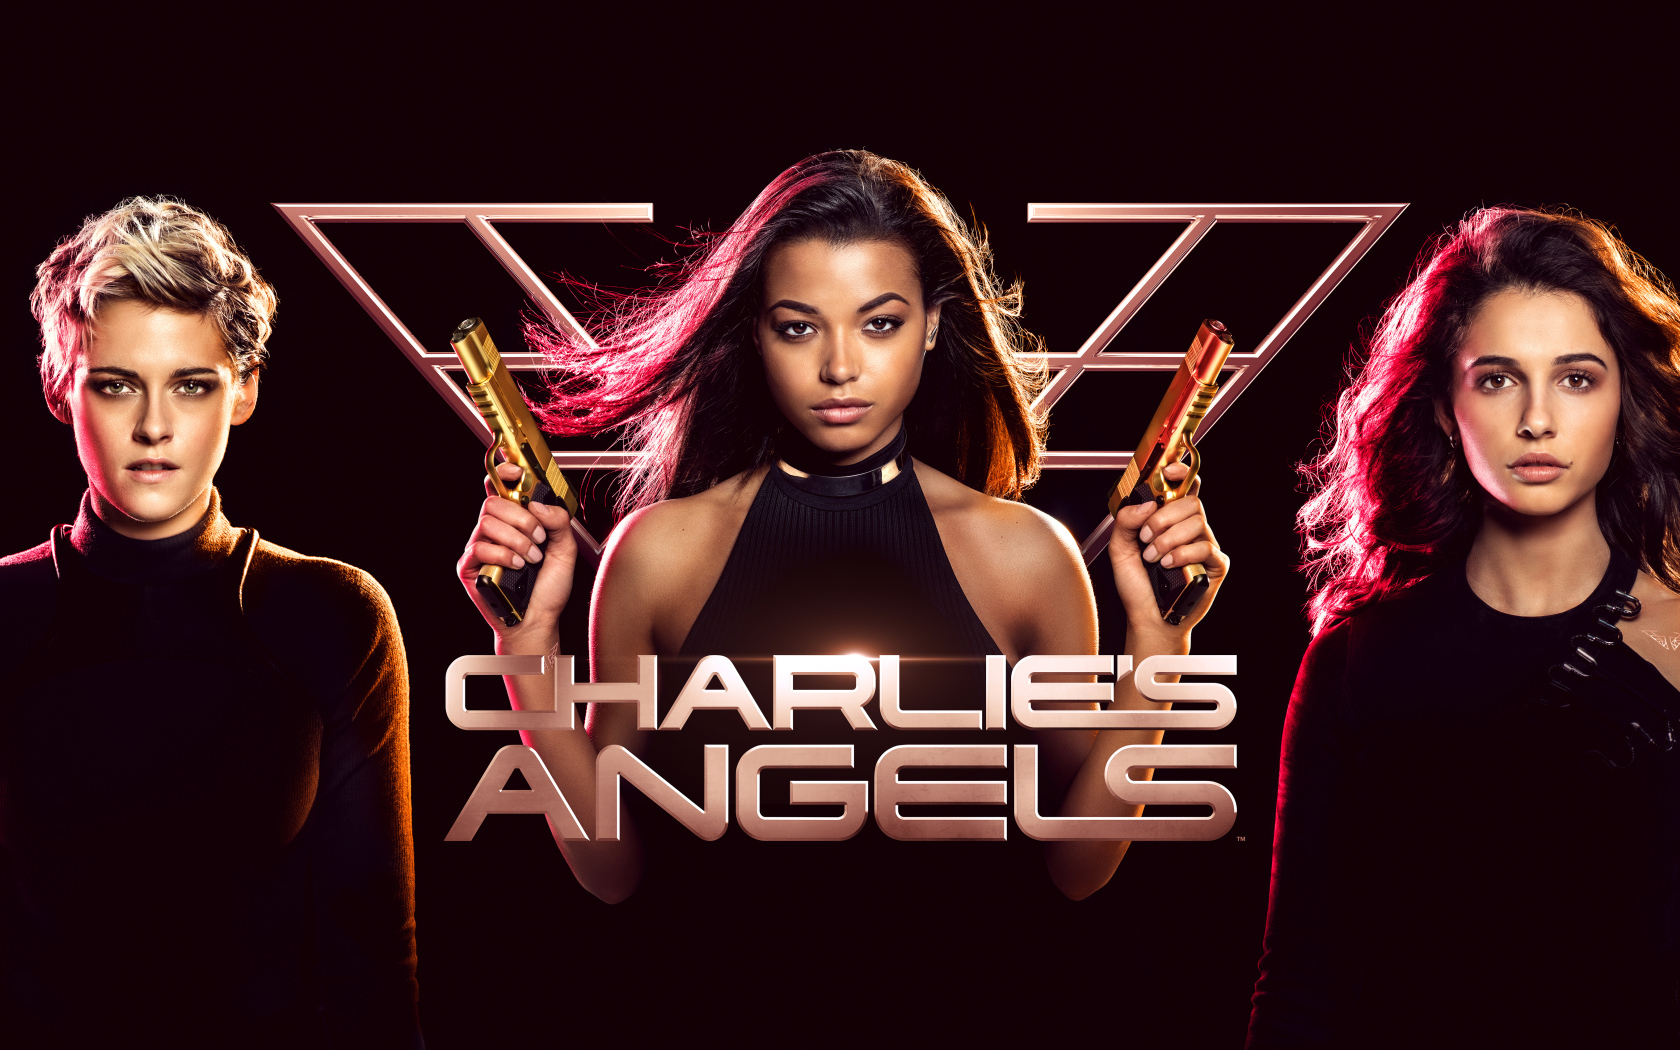 Постер нового фильма Ангелы Чарли, 2019